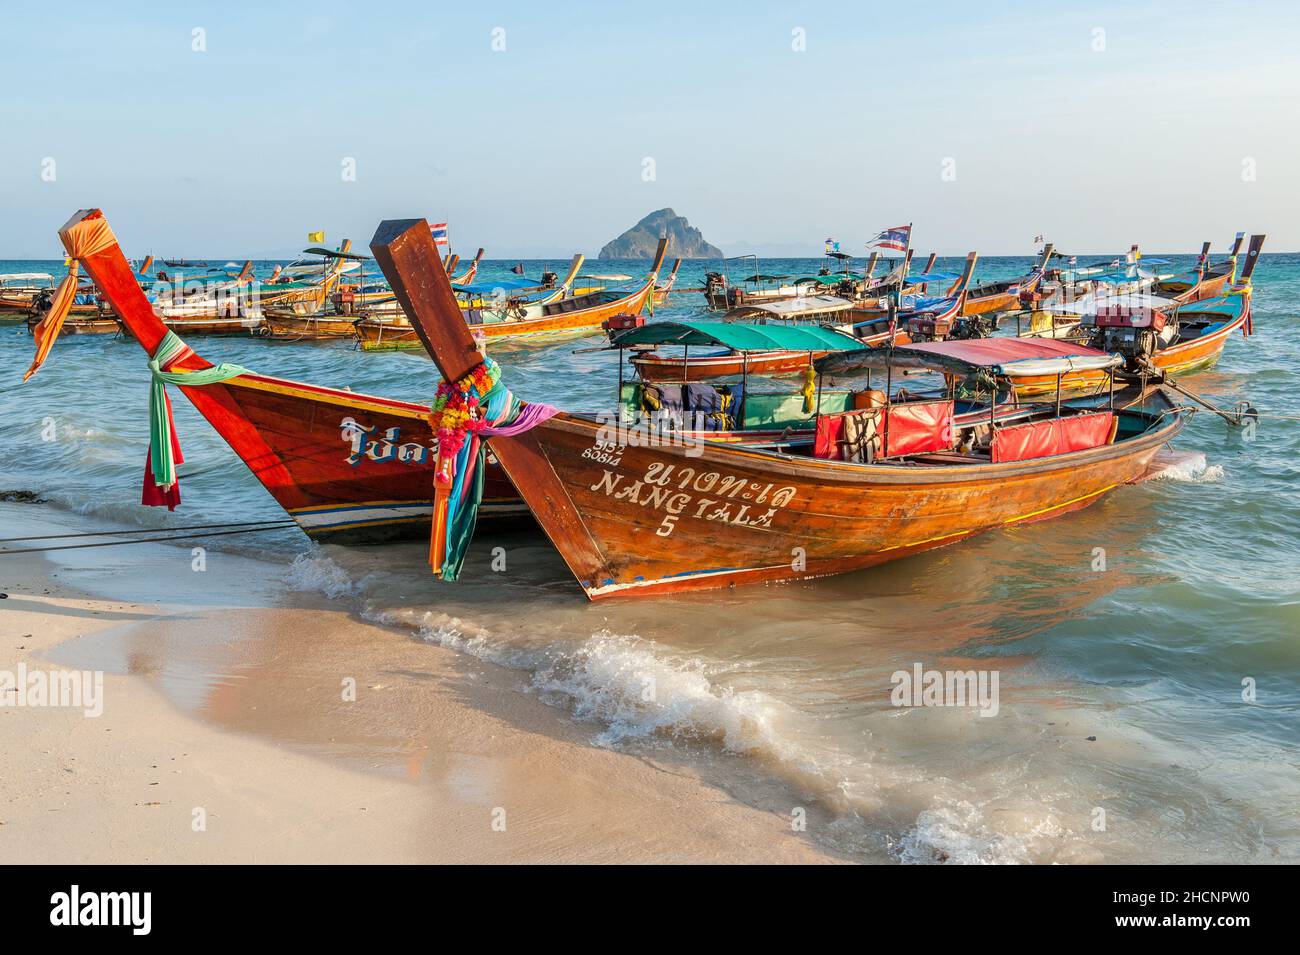 Barcos de cola larga en la playa Laem Tong en las islas Phi Phi. Estas islas tropicales son un destino turístico popular de Phuket y Krabi en Tailandia. Foto de stock